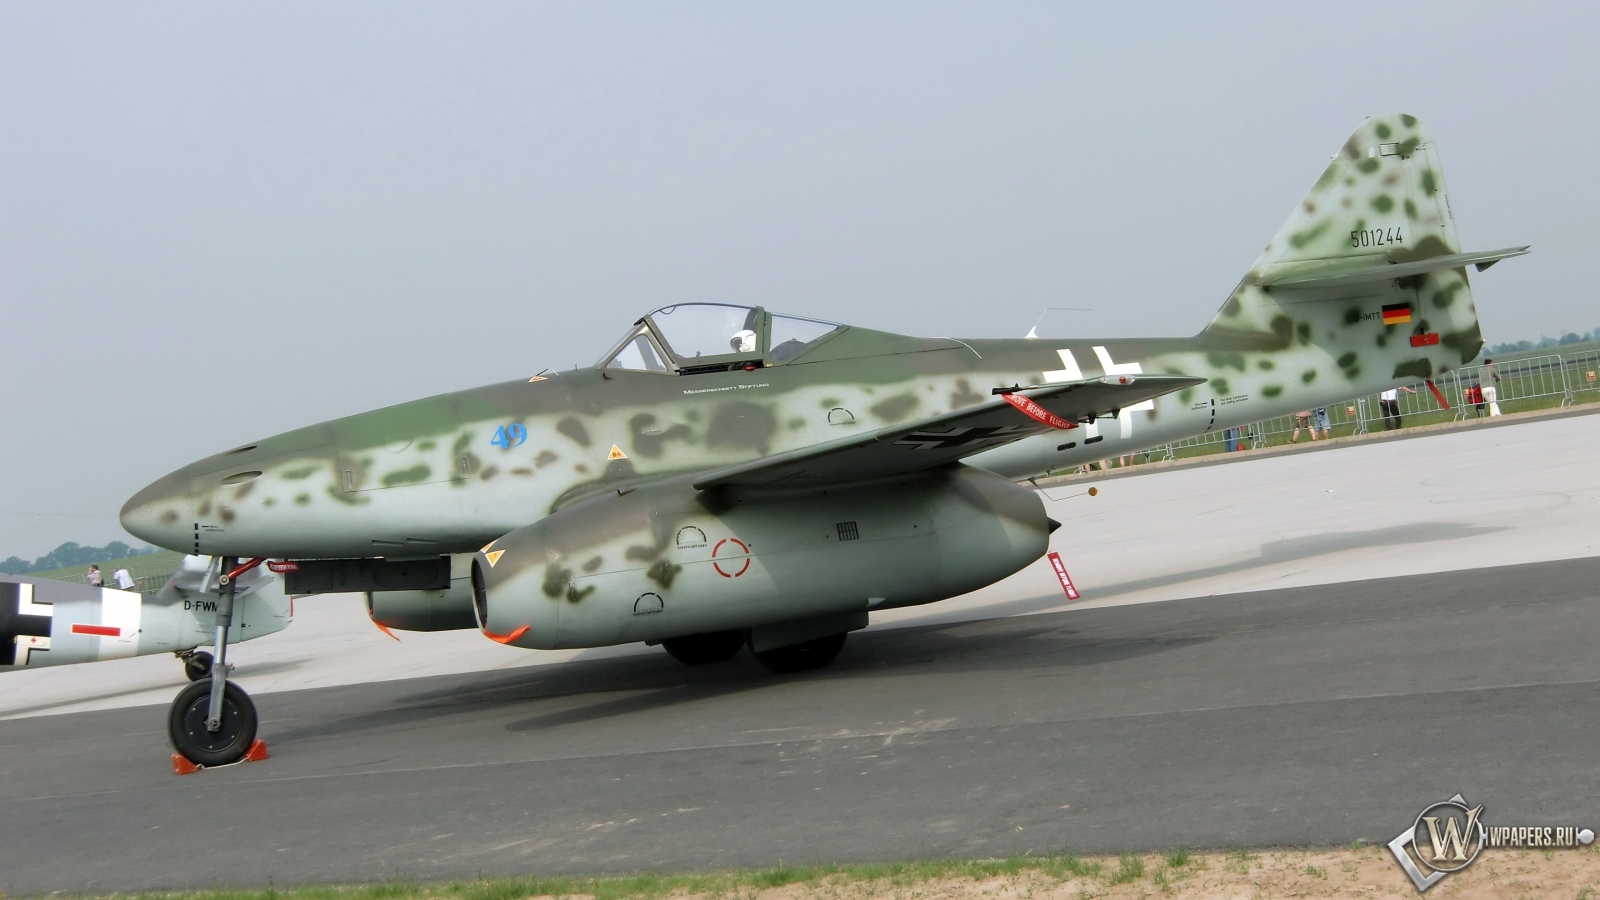 Messerschmitt Me 262 1600x900